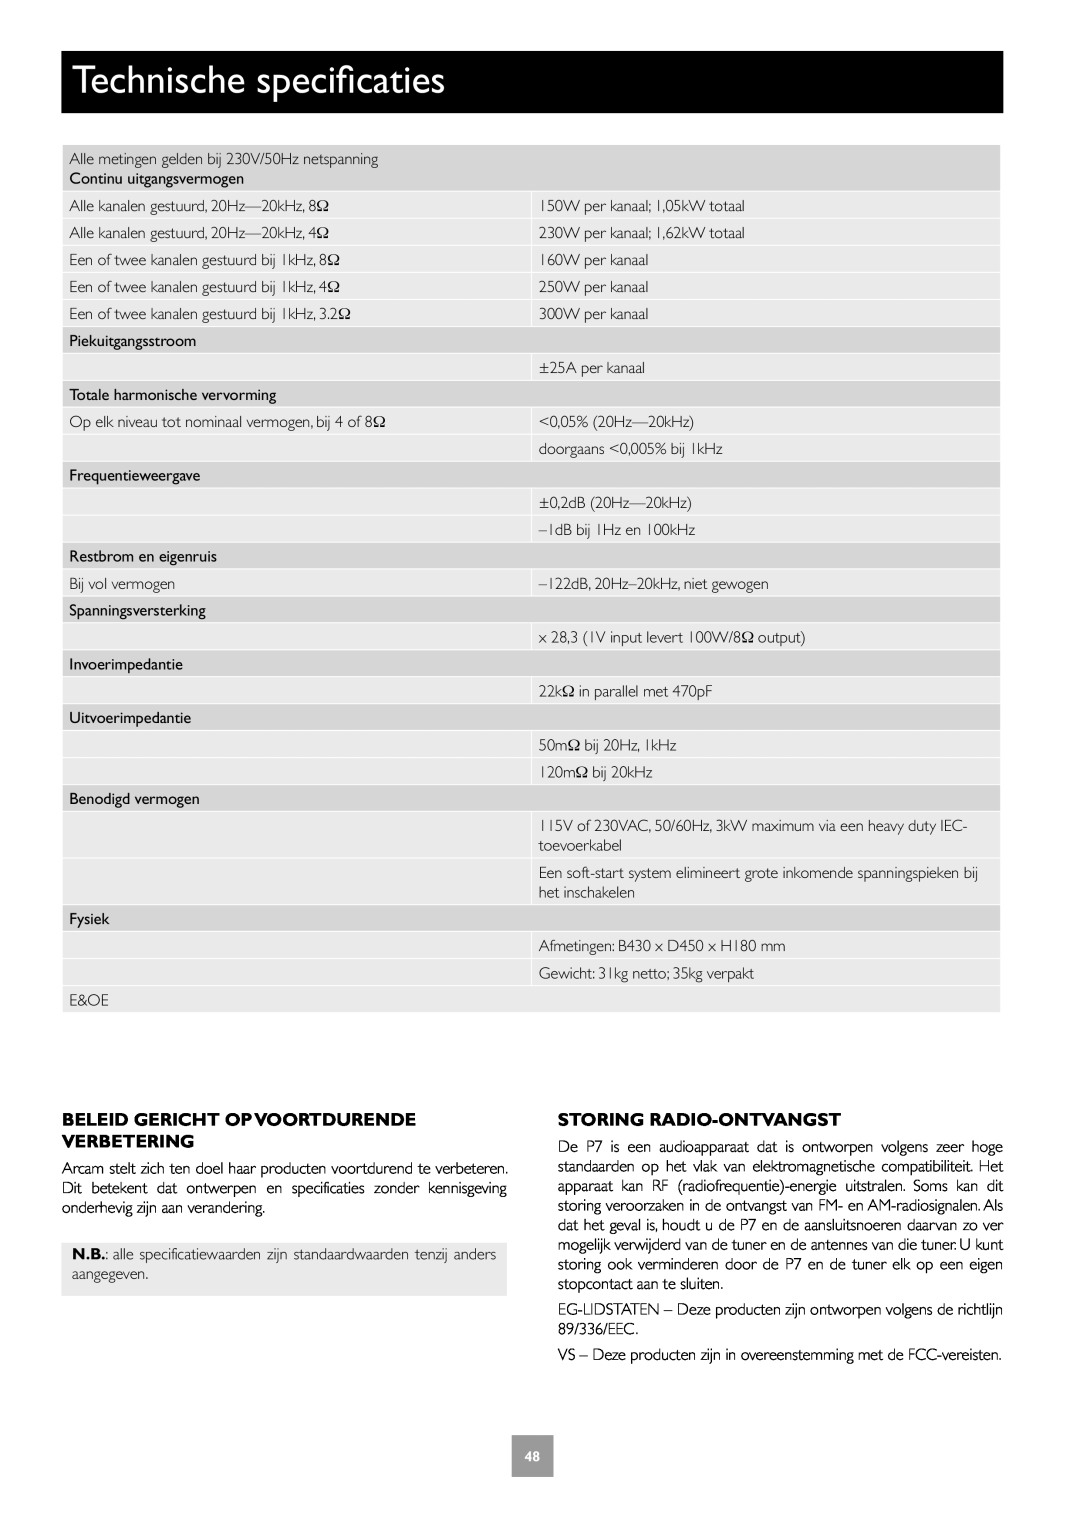 Arcam Multichannel Power Amplifier manual Technische specificaties, Beleid Gericht Op Voortdurende Verbetering 